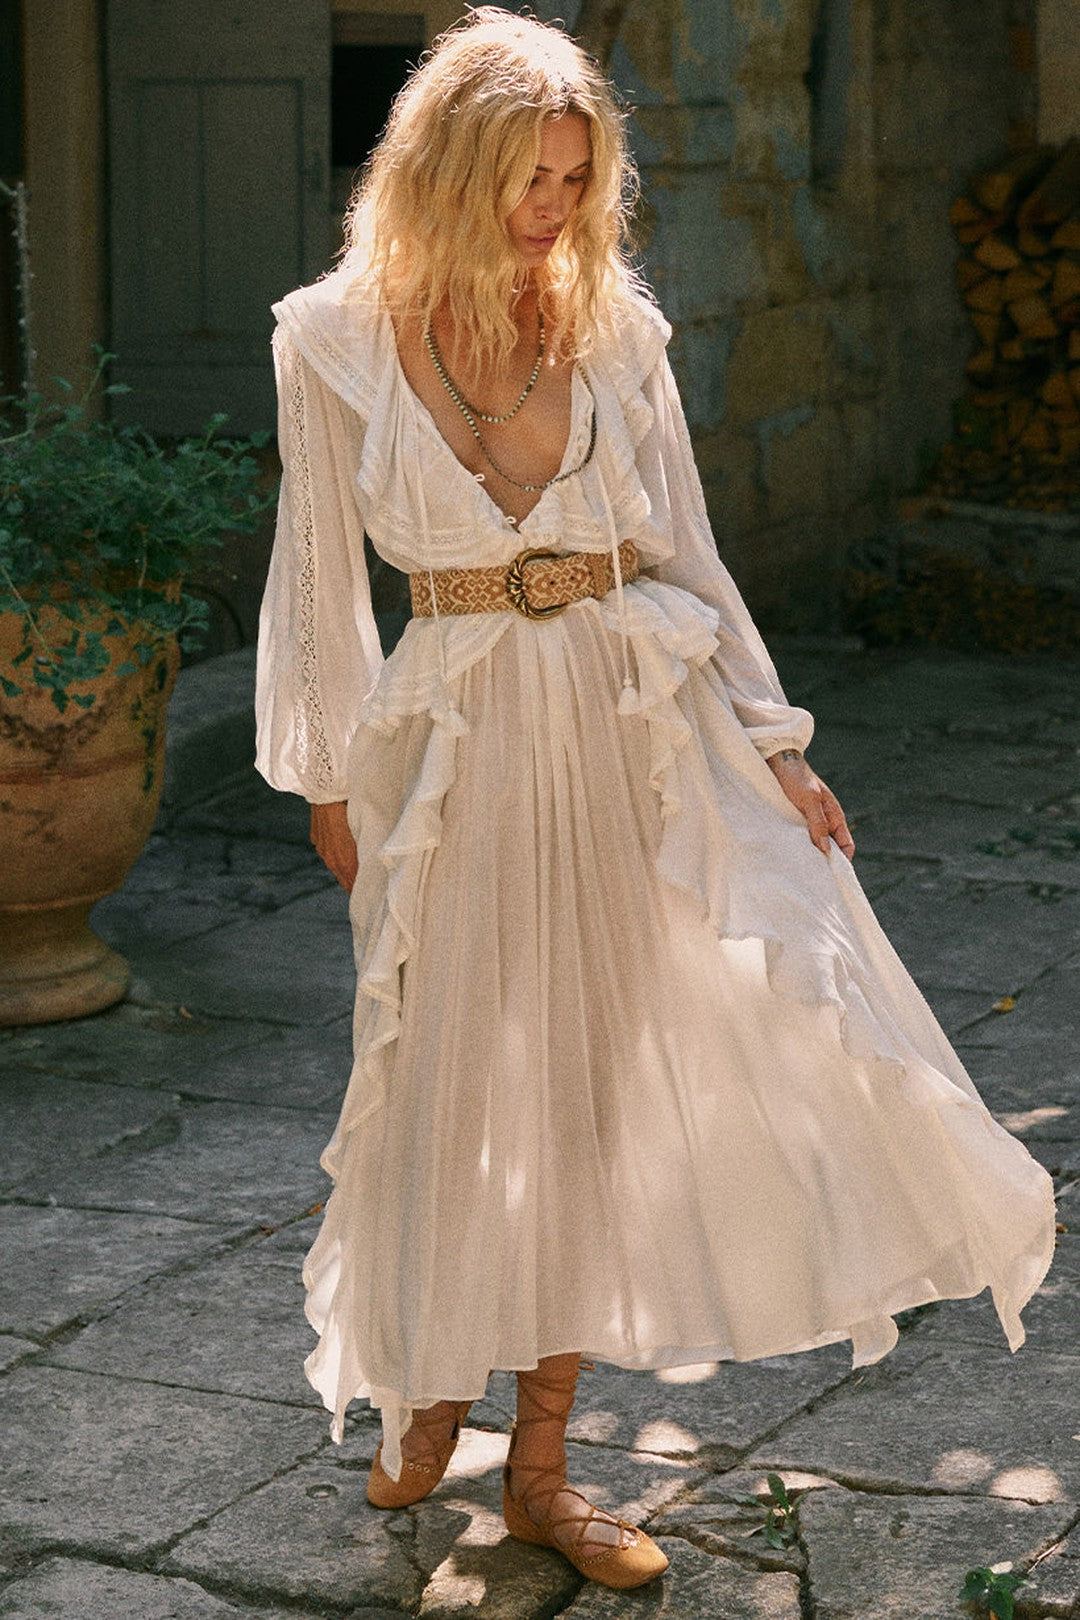 Fleur Lace Gown - White